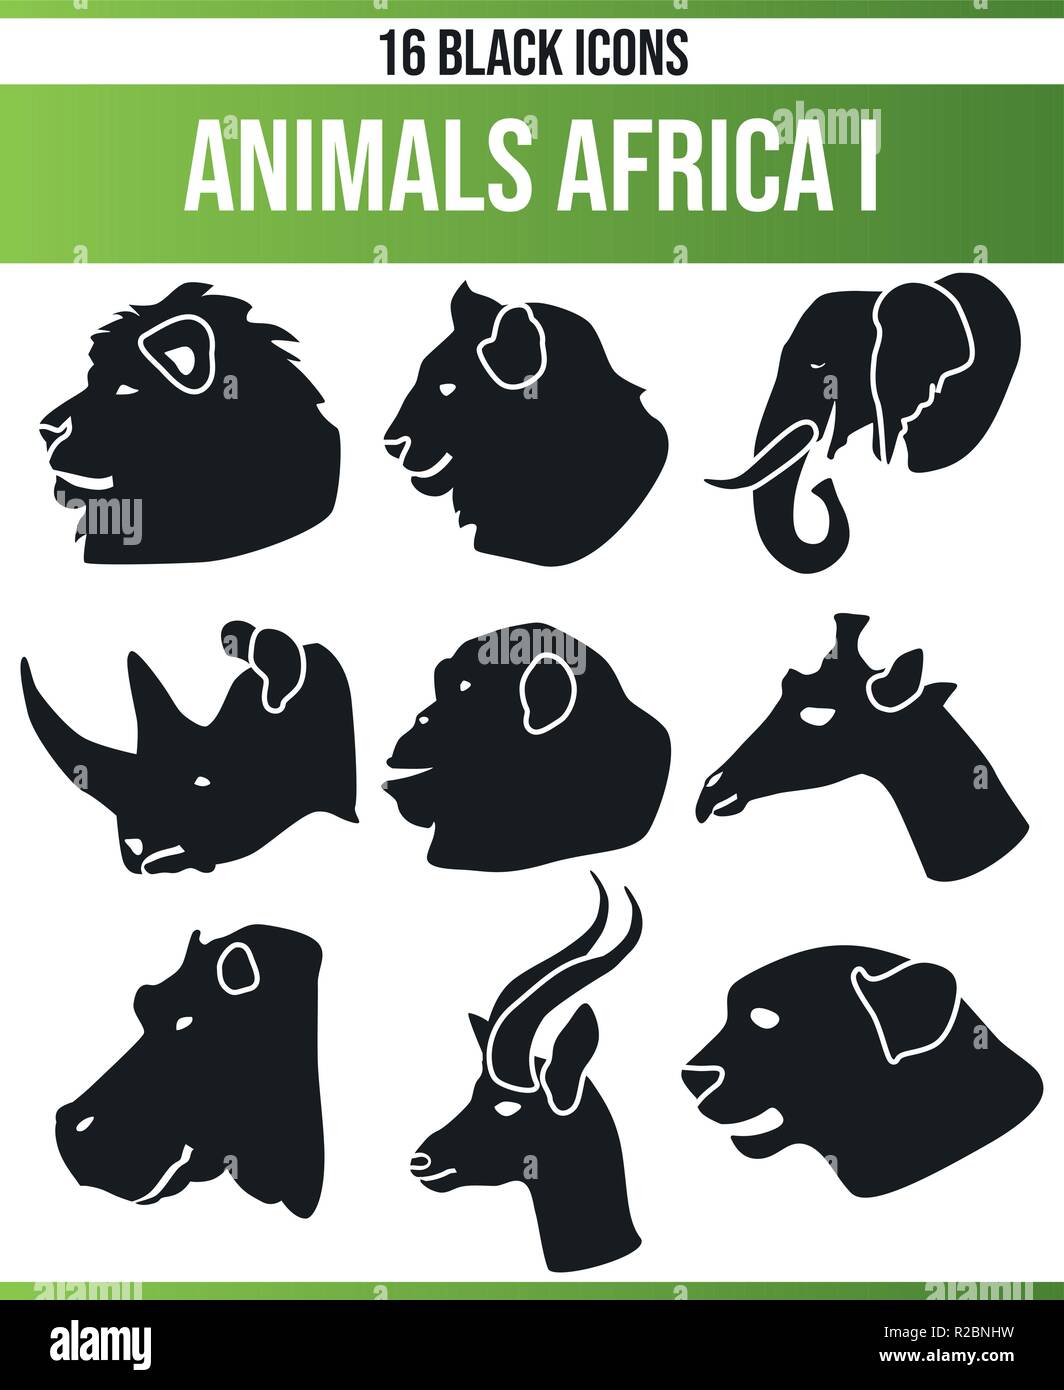 Schwarz Piktoramme/icons über afrikanische Tiere. Dieses Icon Set ist perfekt für kreative Menschen und Designer, die das Thema der afrikanischen Tiere im Th benötigen Stock Vektor